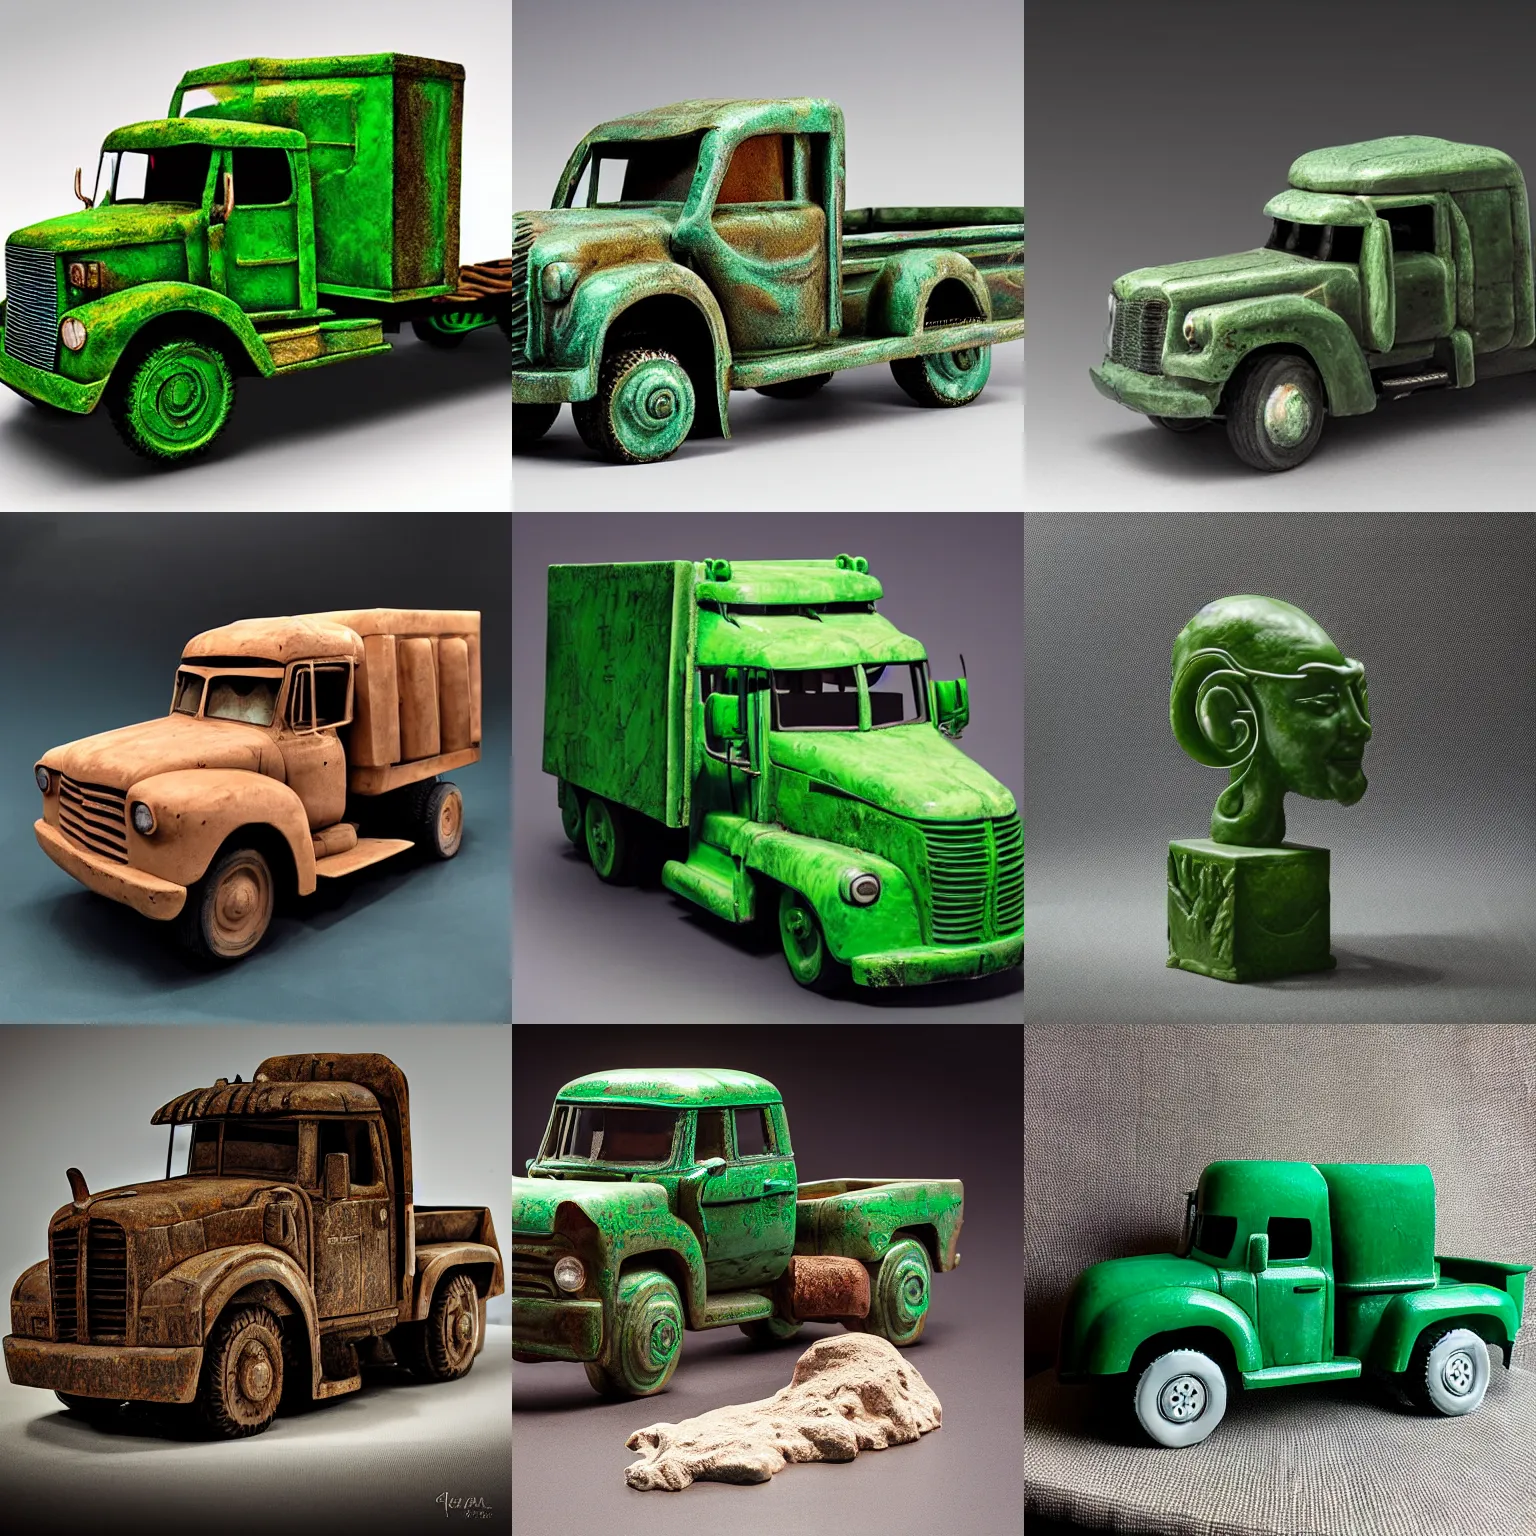 Prompt: big truck, jade sculpture, studio lighting